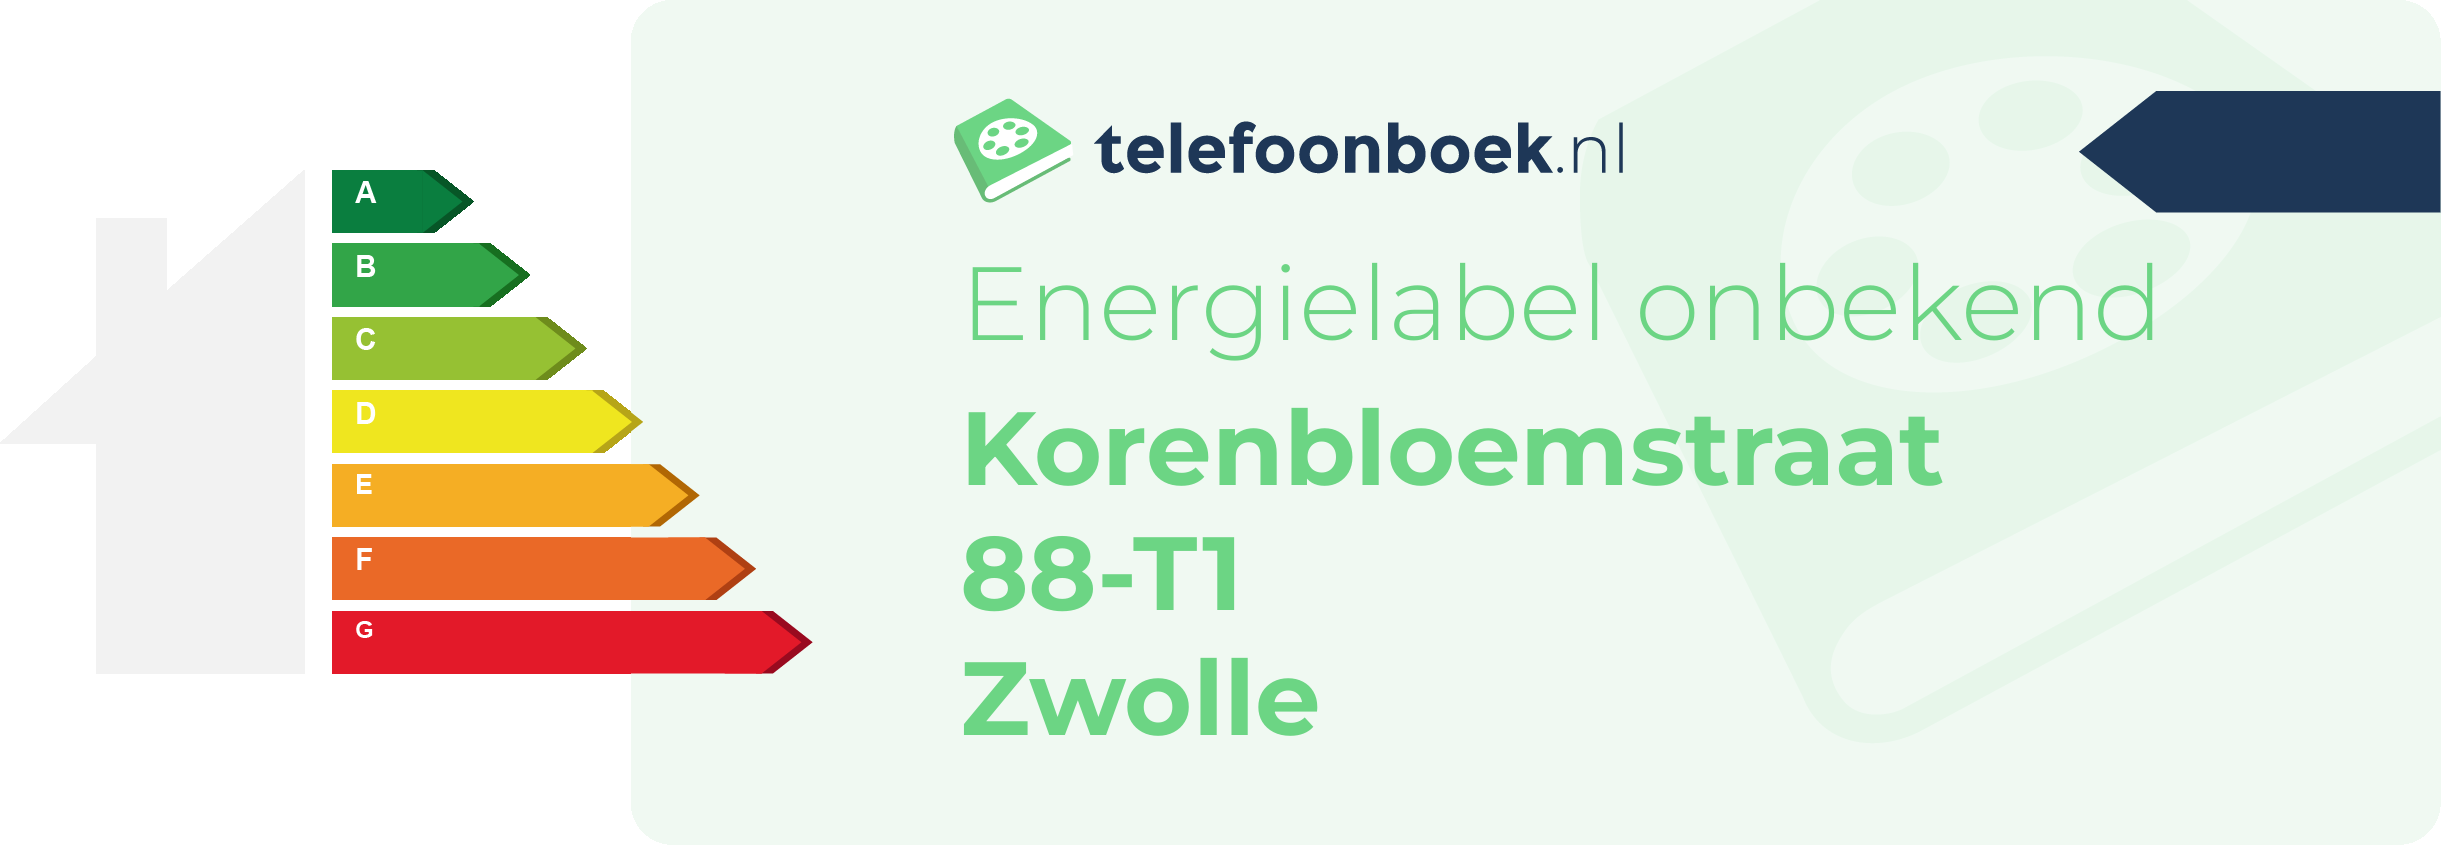 Energielabel Korenbloemstraat 88-T1 Zwolle